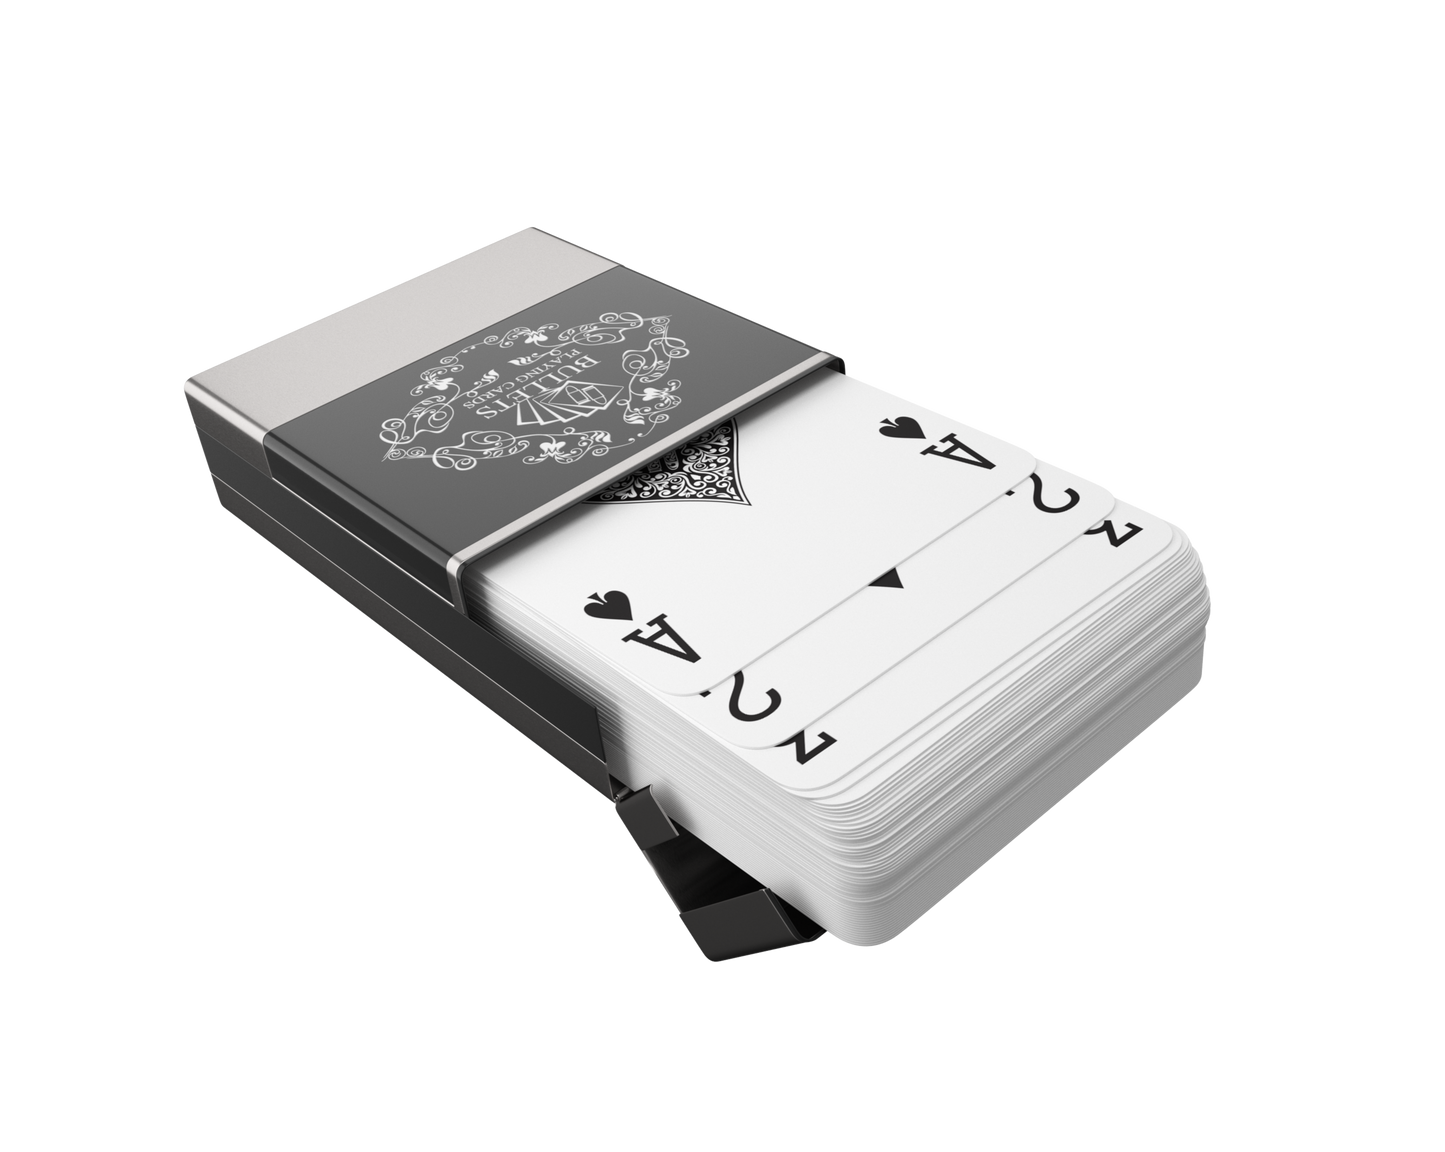 Cartes à jouer Backpacker, y compris cartes à jouer en plastique, boîte en aluminium et règles pour 5 jeux de voyage